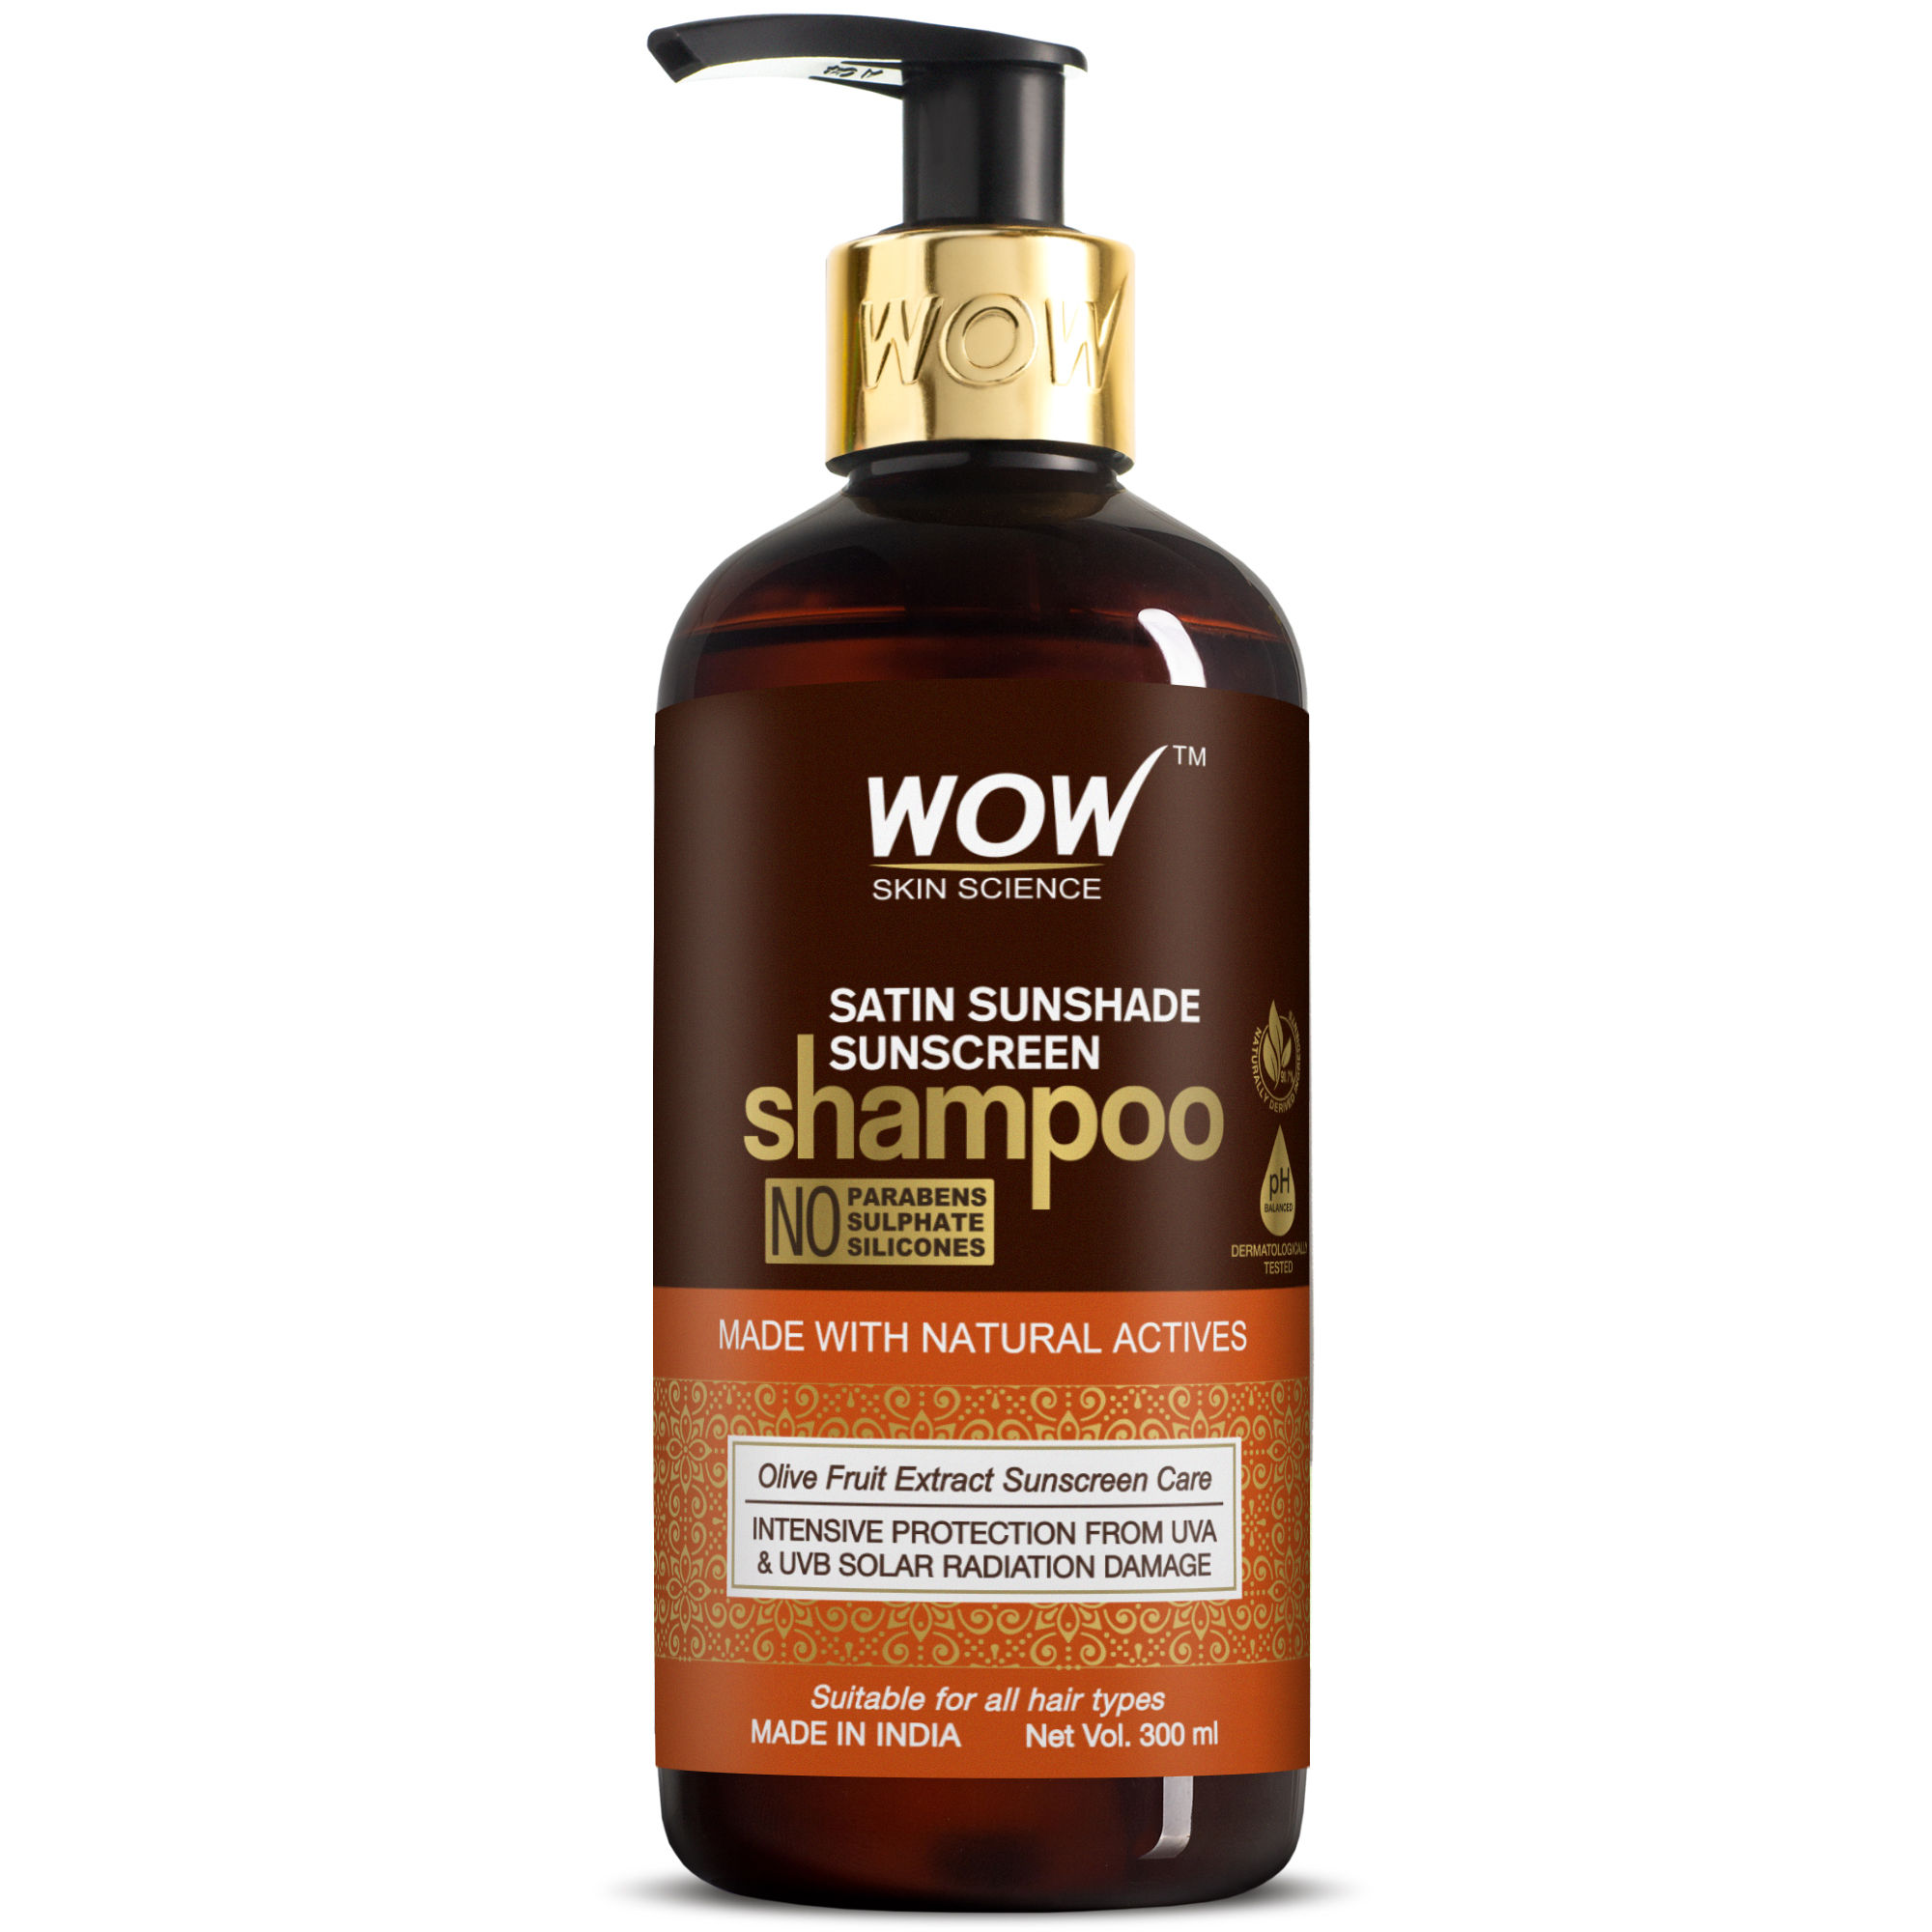 WOW Skin Science Satin Sunshade Sunscreen Shampoo